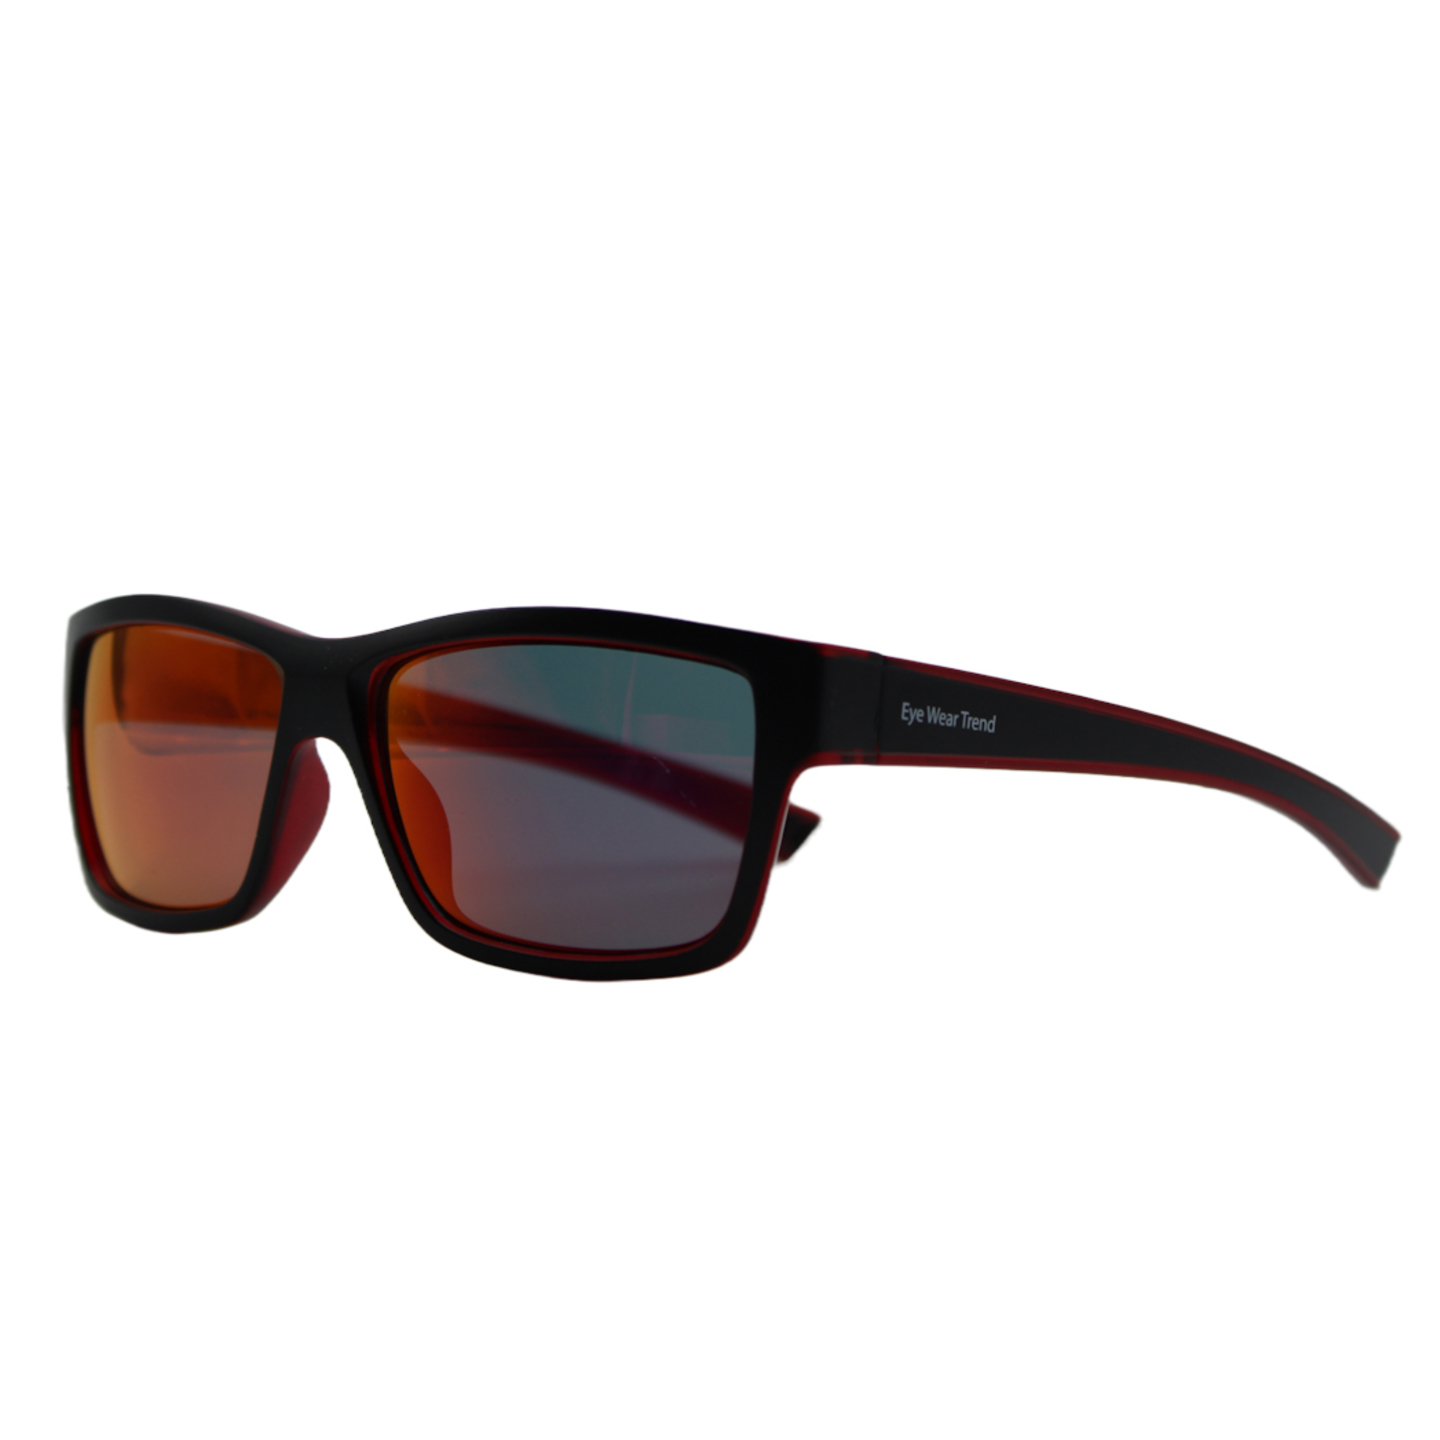 Retro Square Sunglasses for Mens and Womens